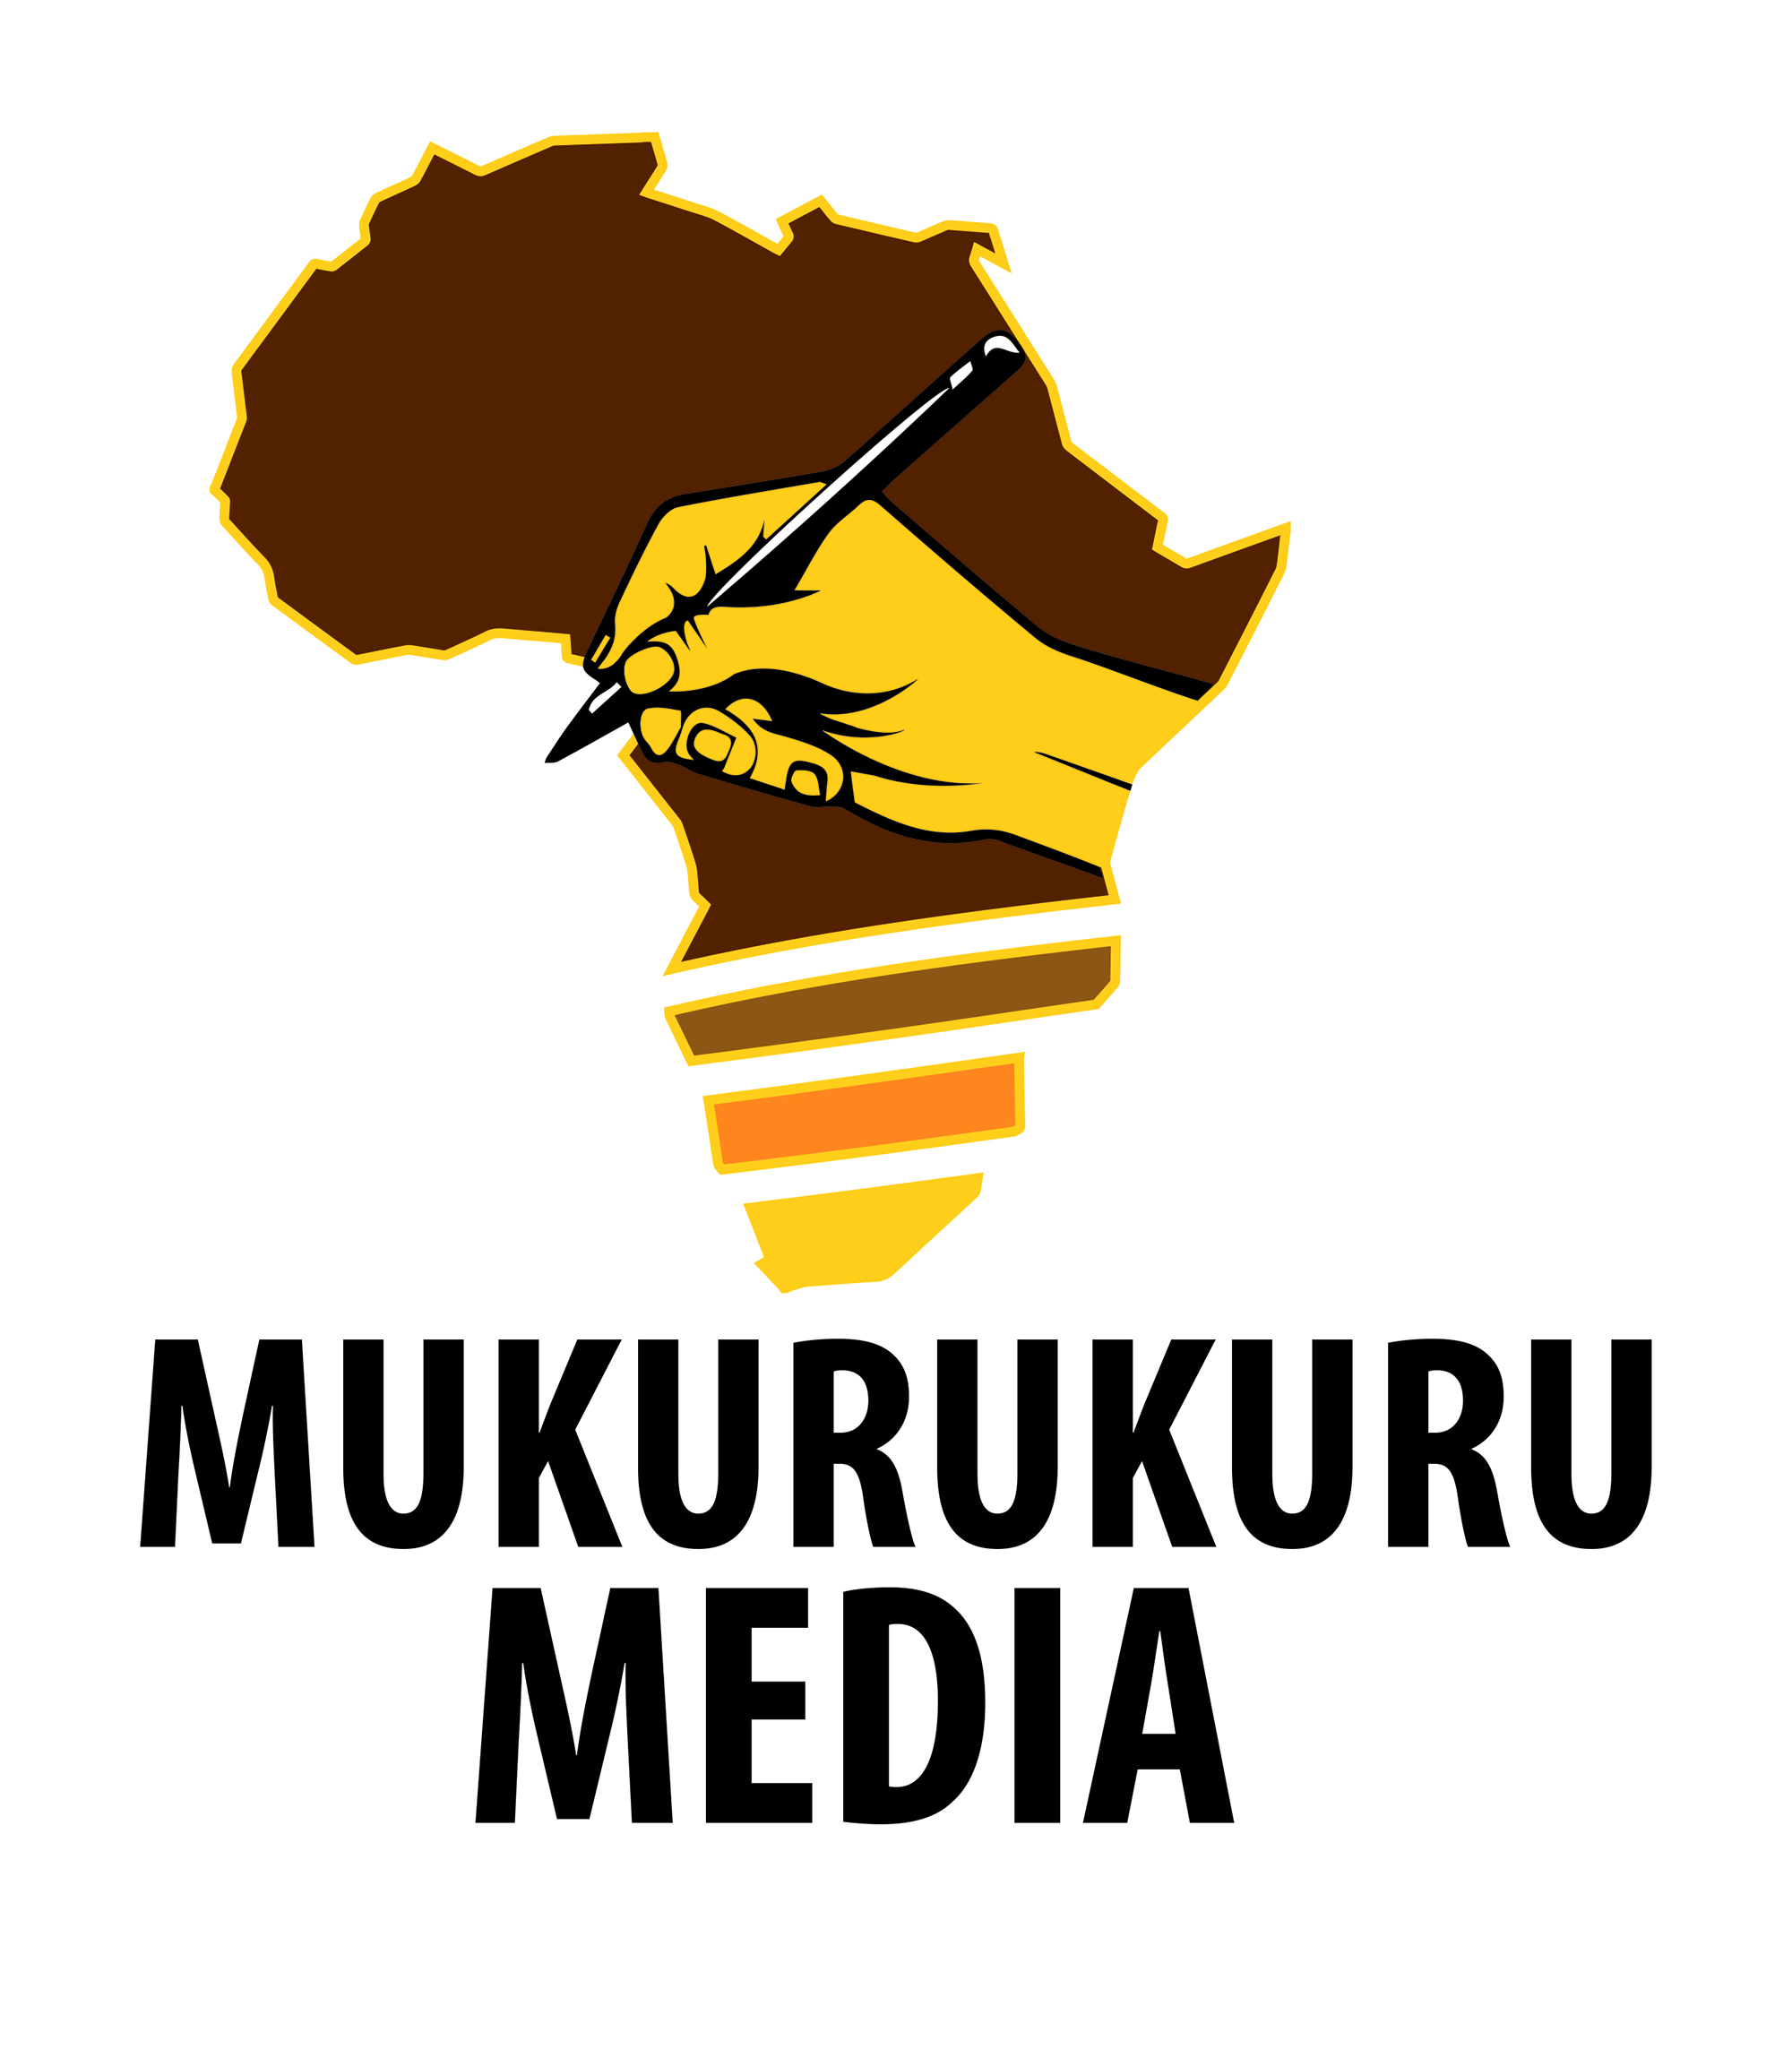 Mukurukuru logo